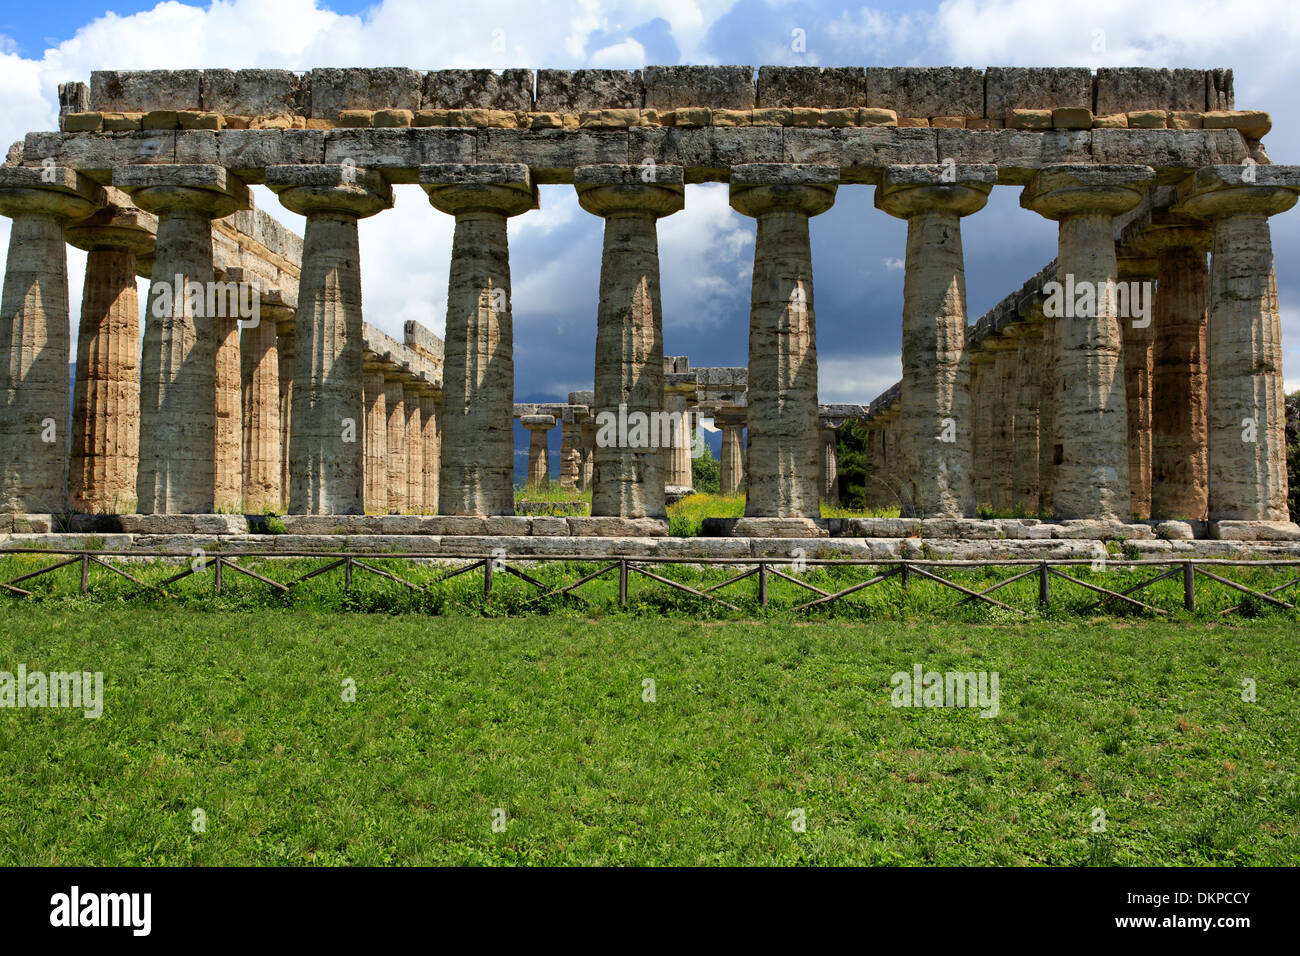 Temple d'Héra (550 BC), Paestum, en Campanie, Italie Banque D'Images